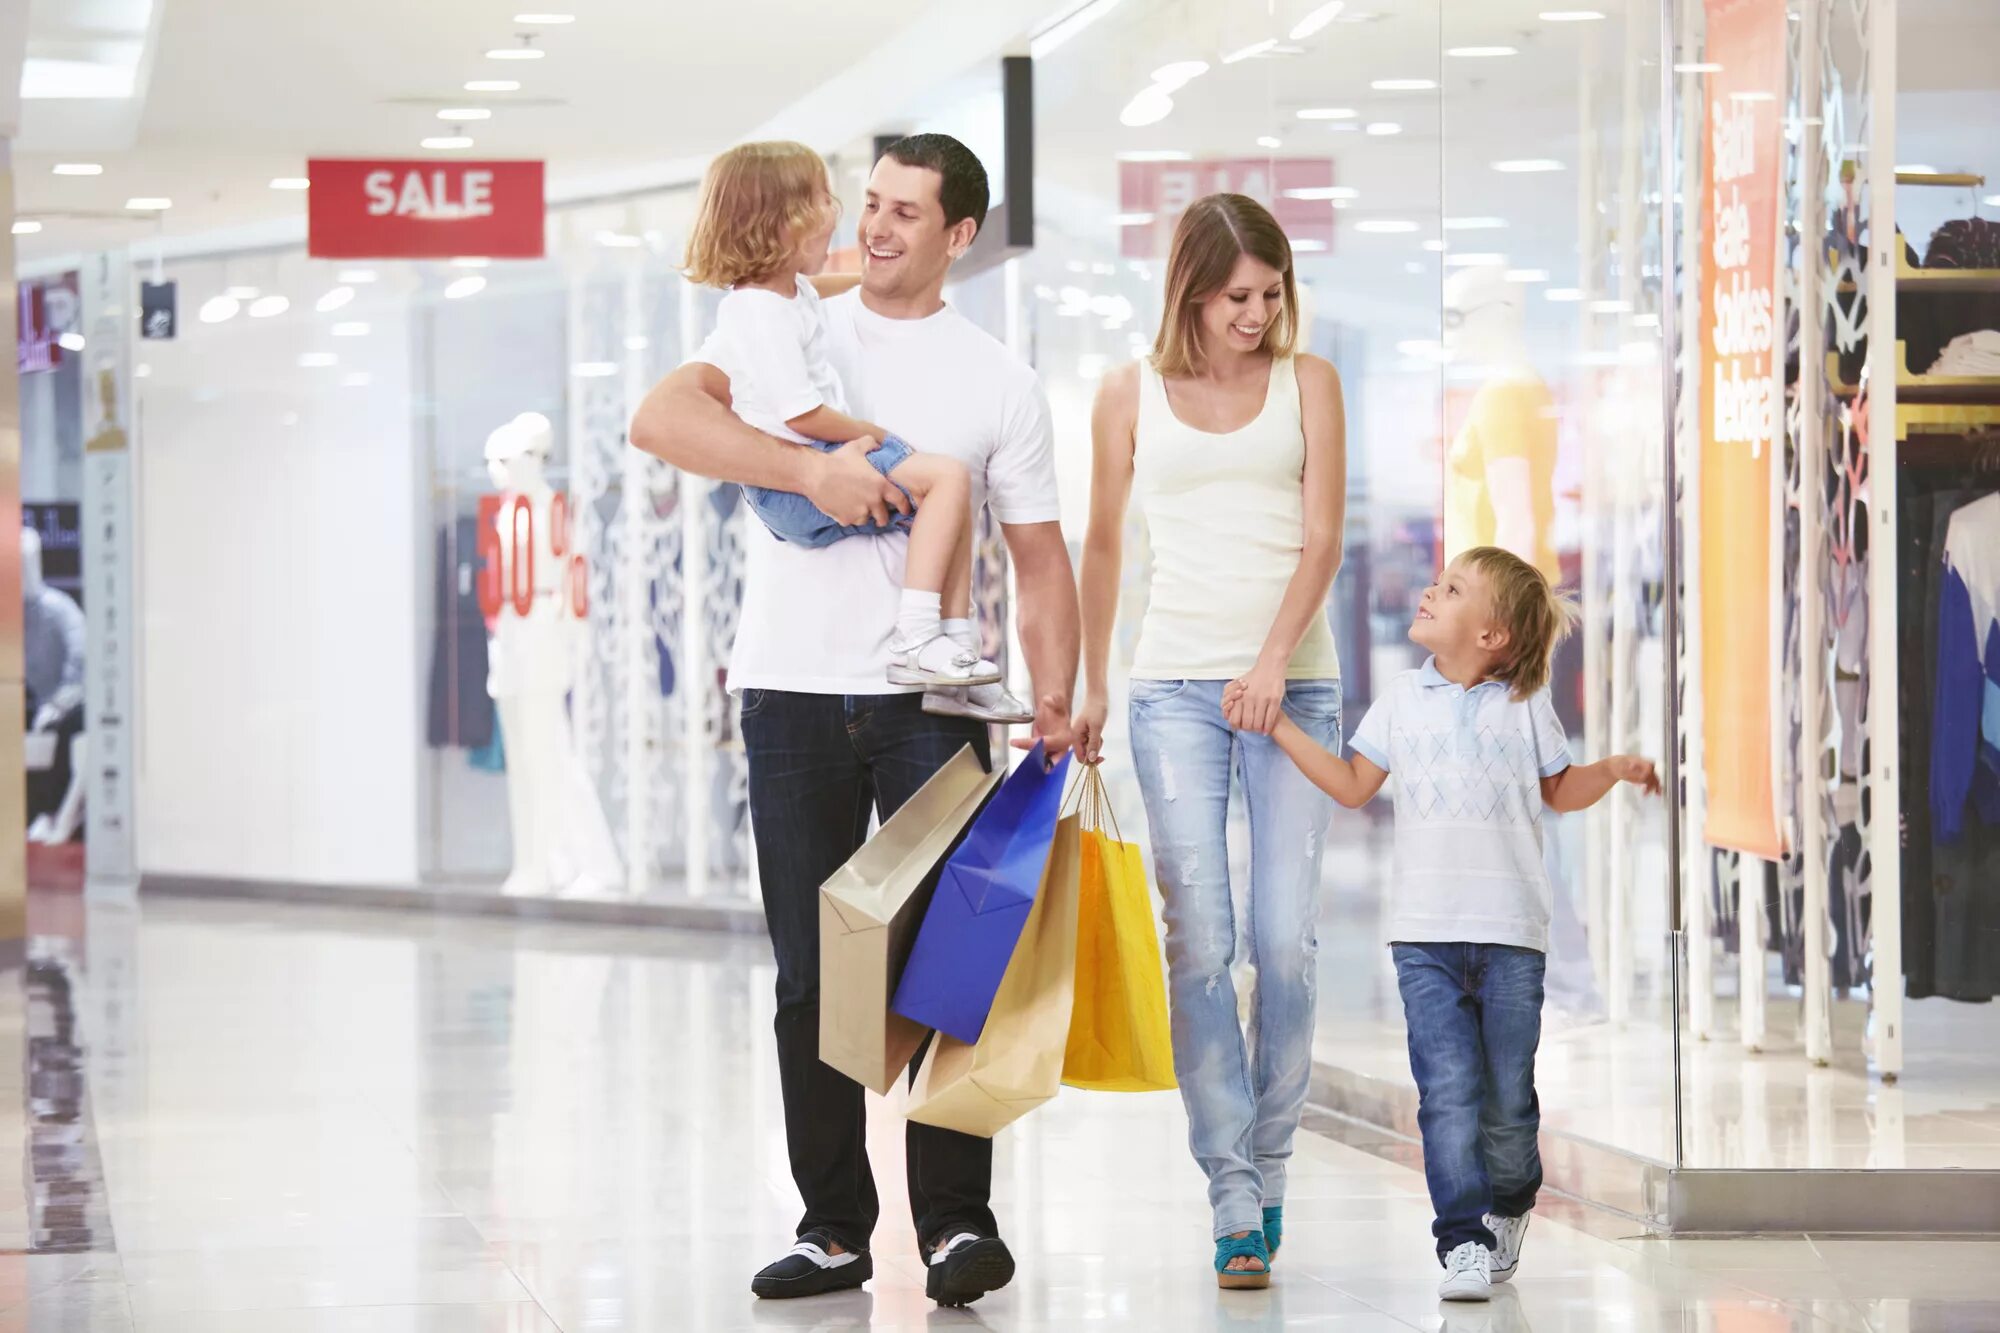 Shopping media ru. Шоппинг всей семьей. Дети шоппинг. Семья с покупками. Одежда для всей семьи шоппинг.